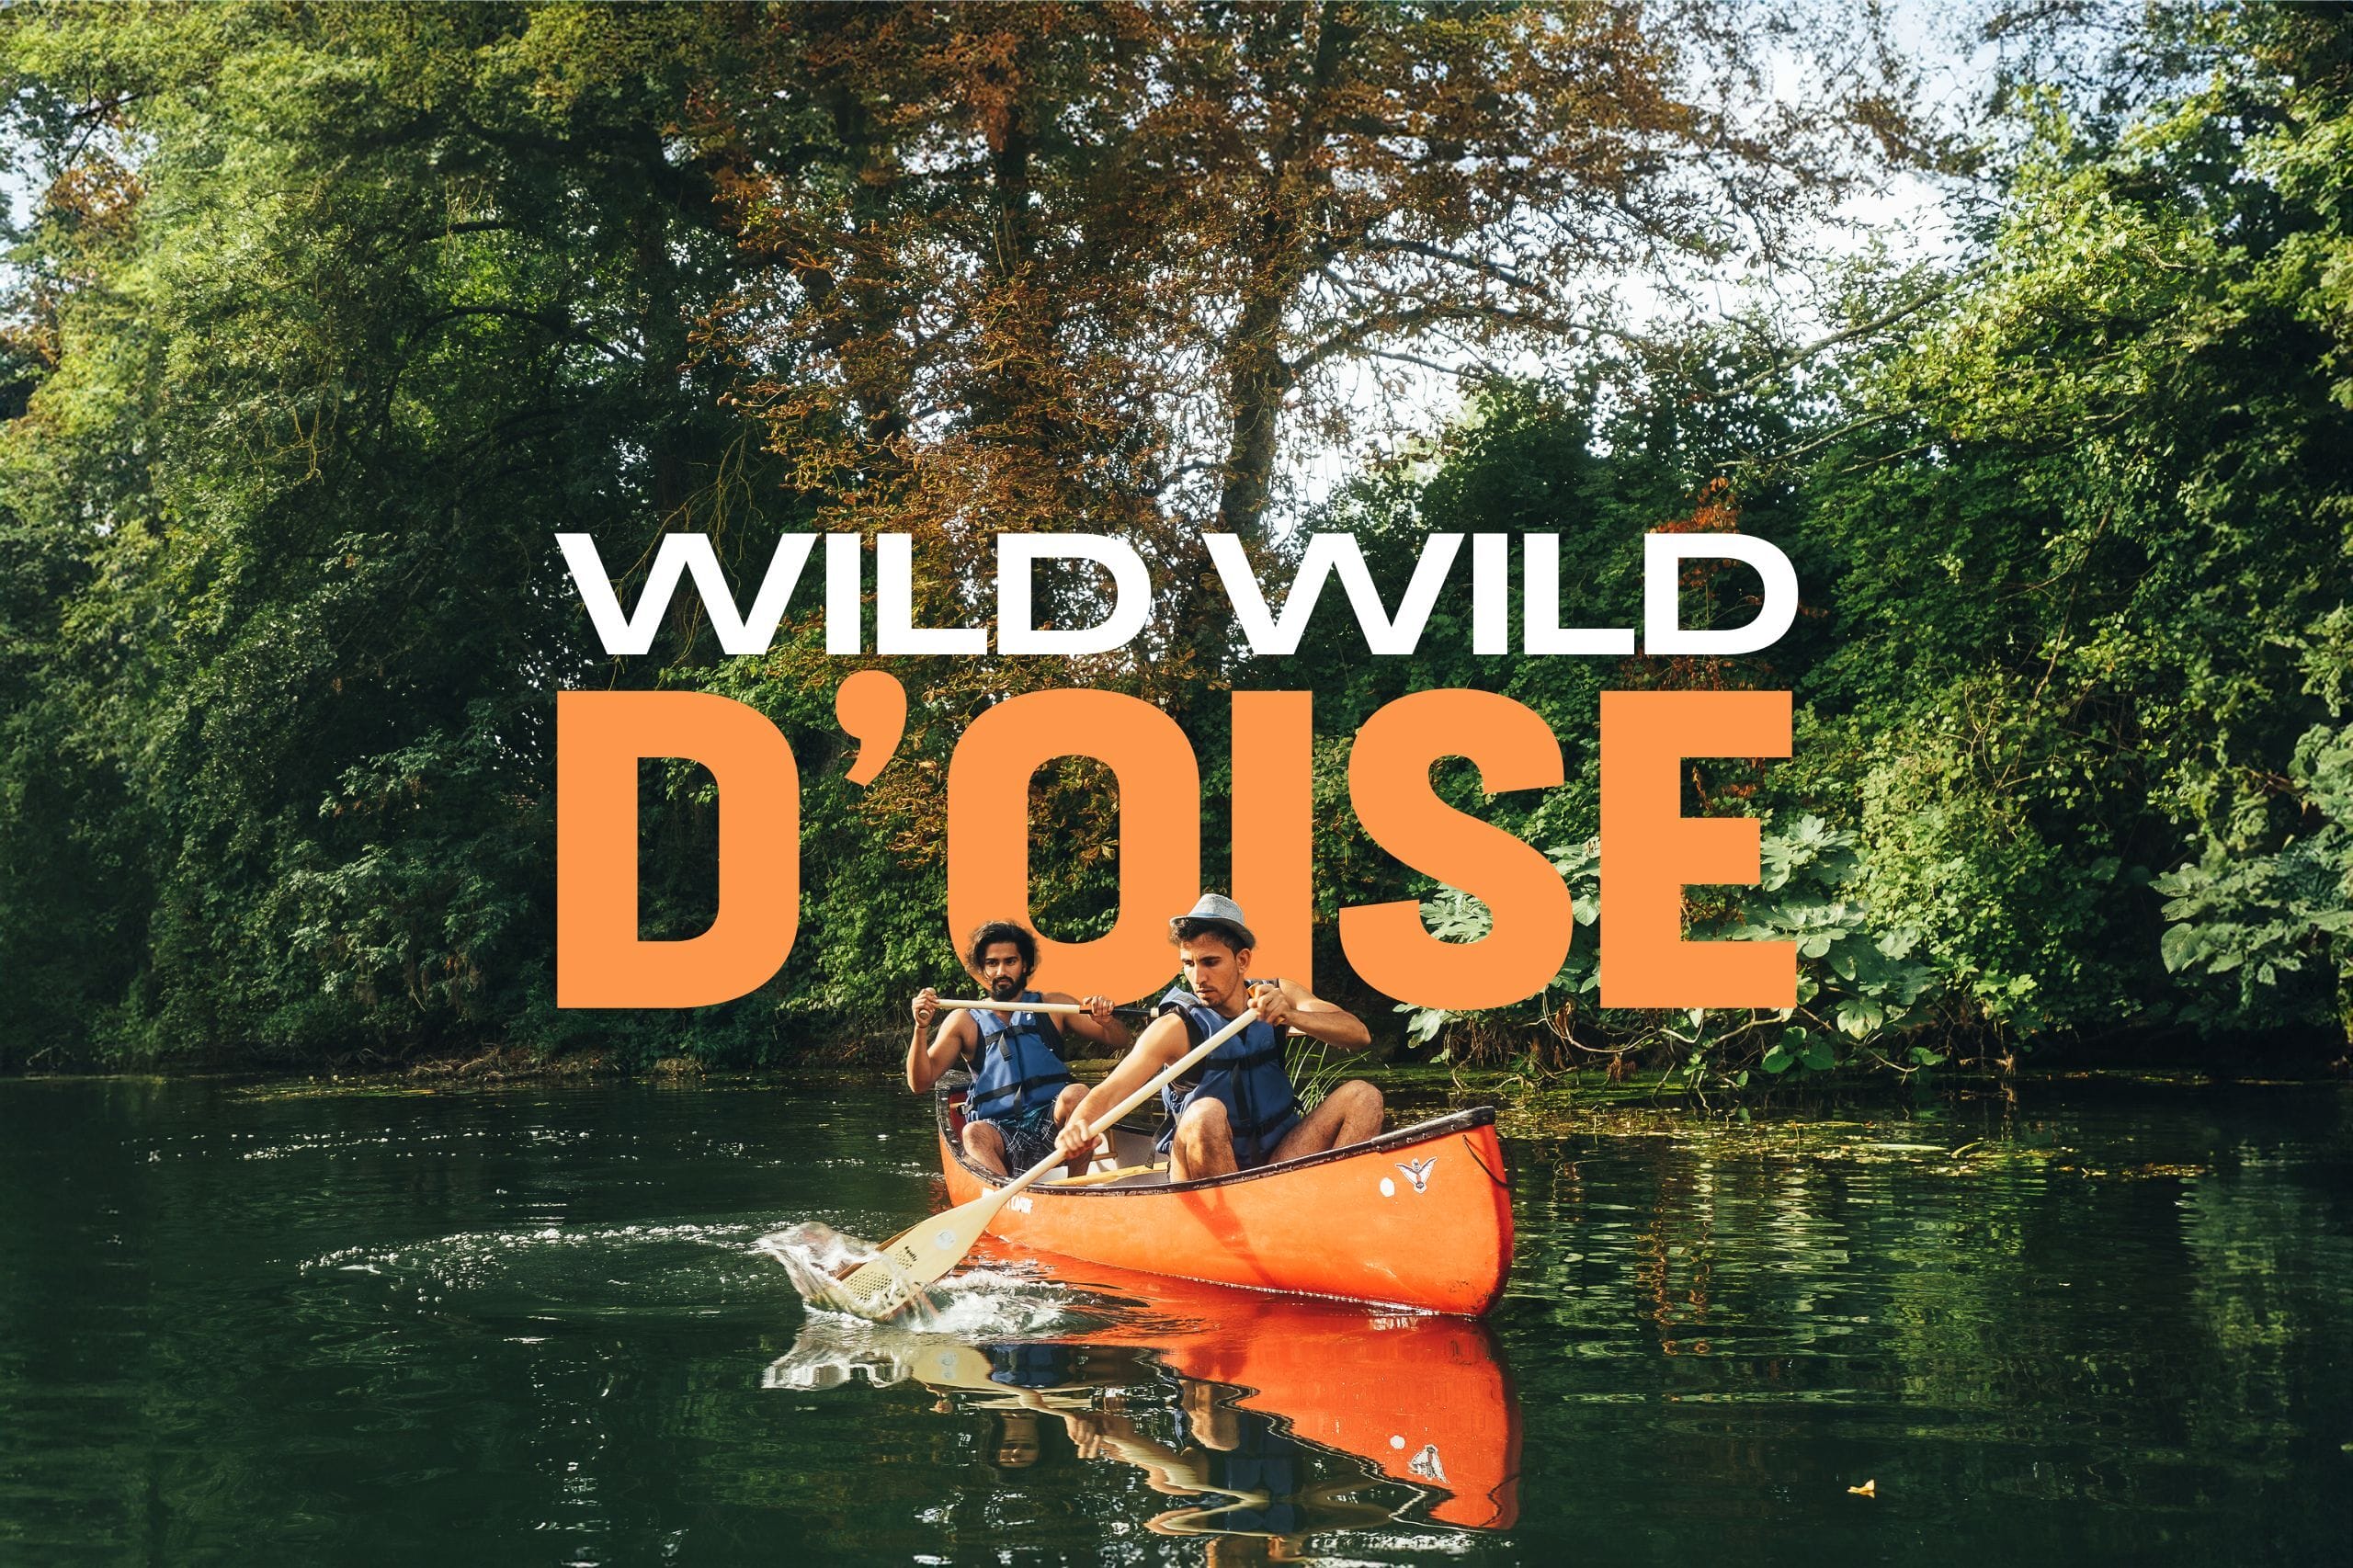 WILD WILD WEST : Week-end canoë et randonnée dans le parc naturel du Vexin